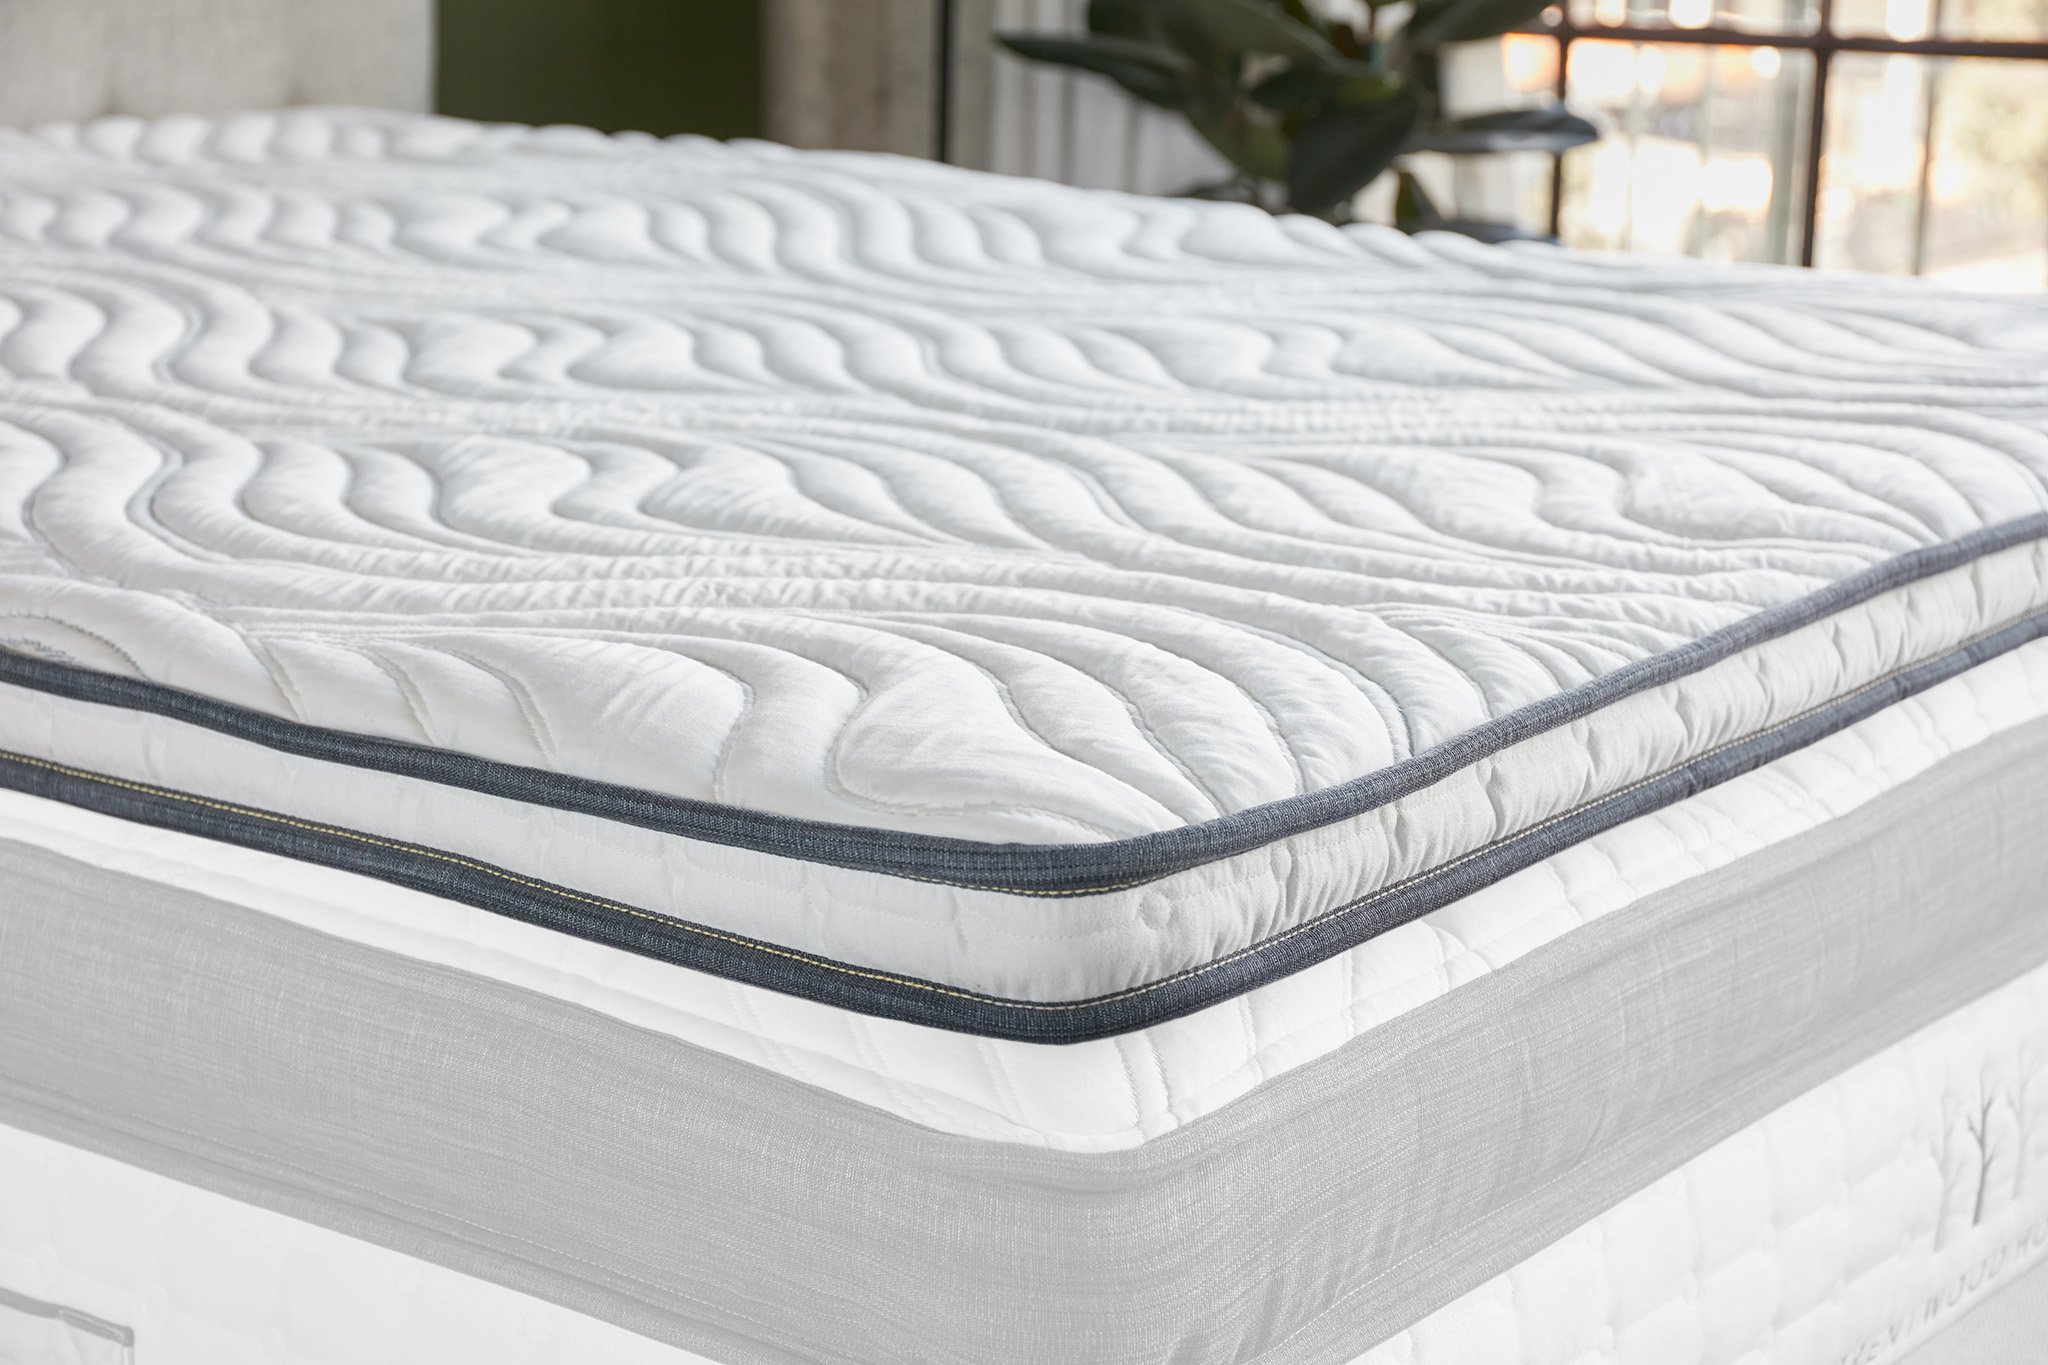 mattress topper memory foam offer